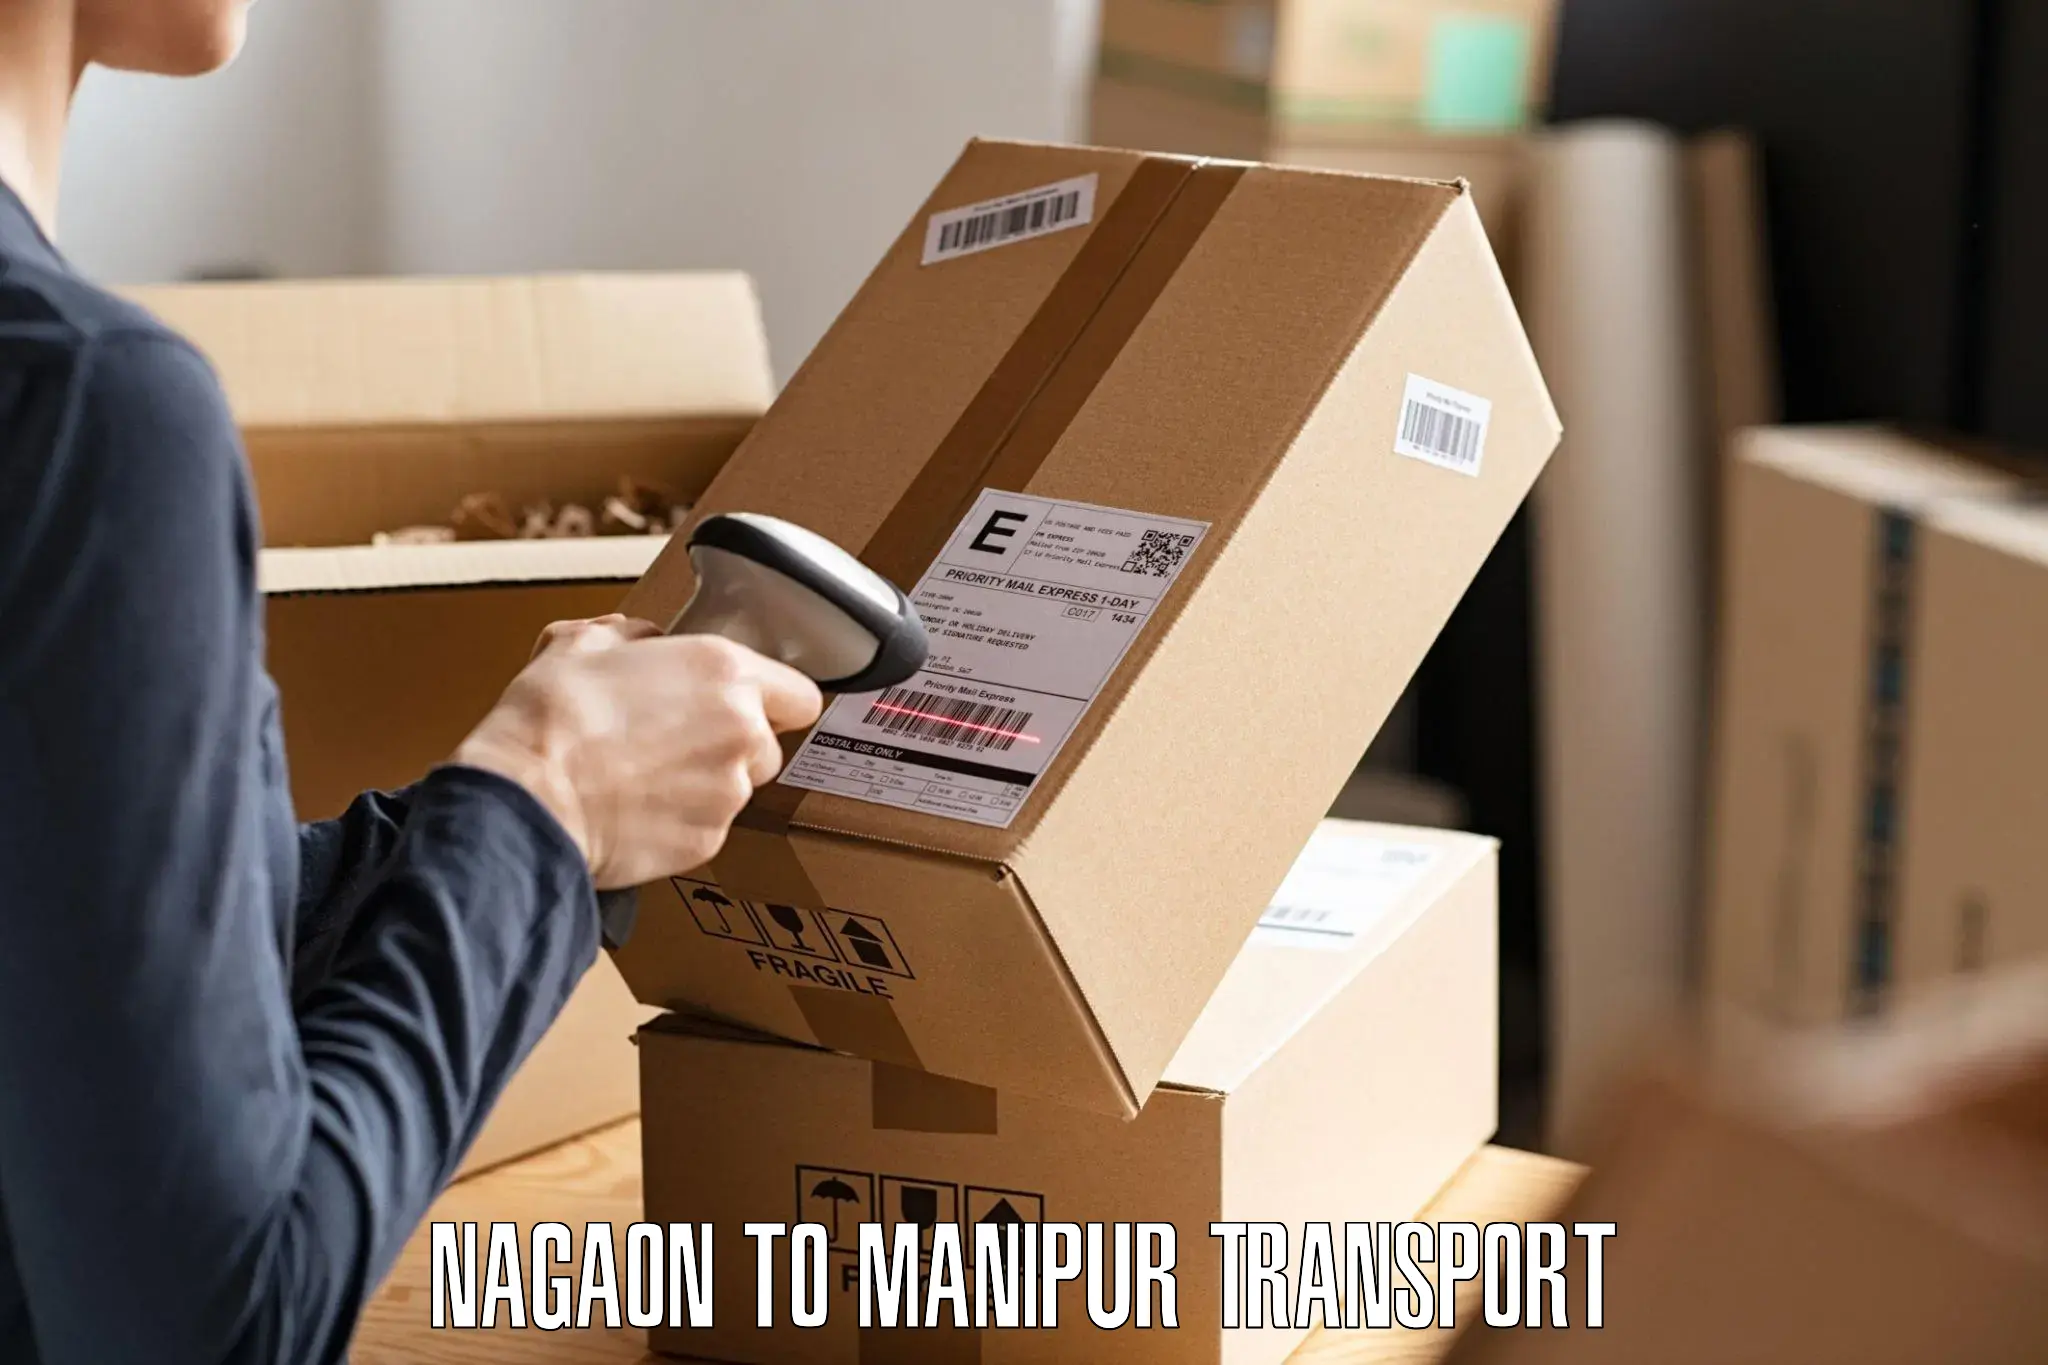 Parcel transport services Nagaon to Imphal